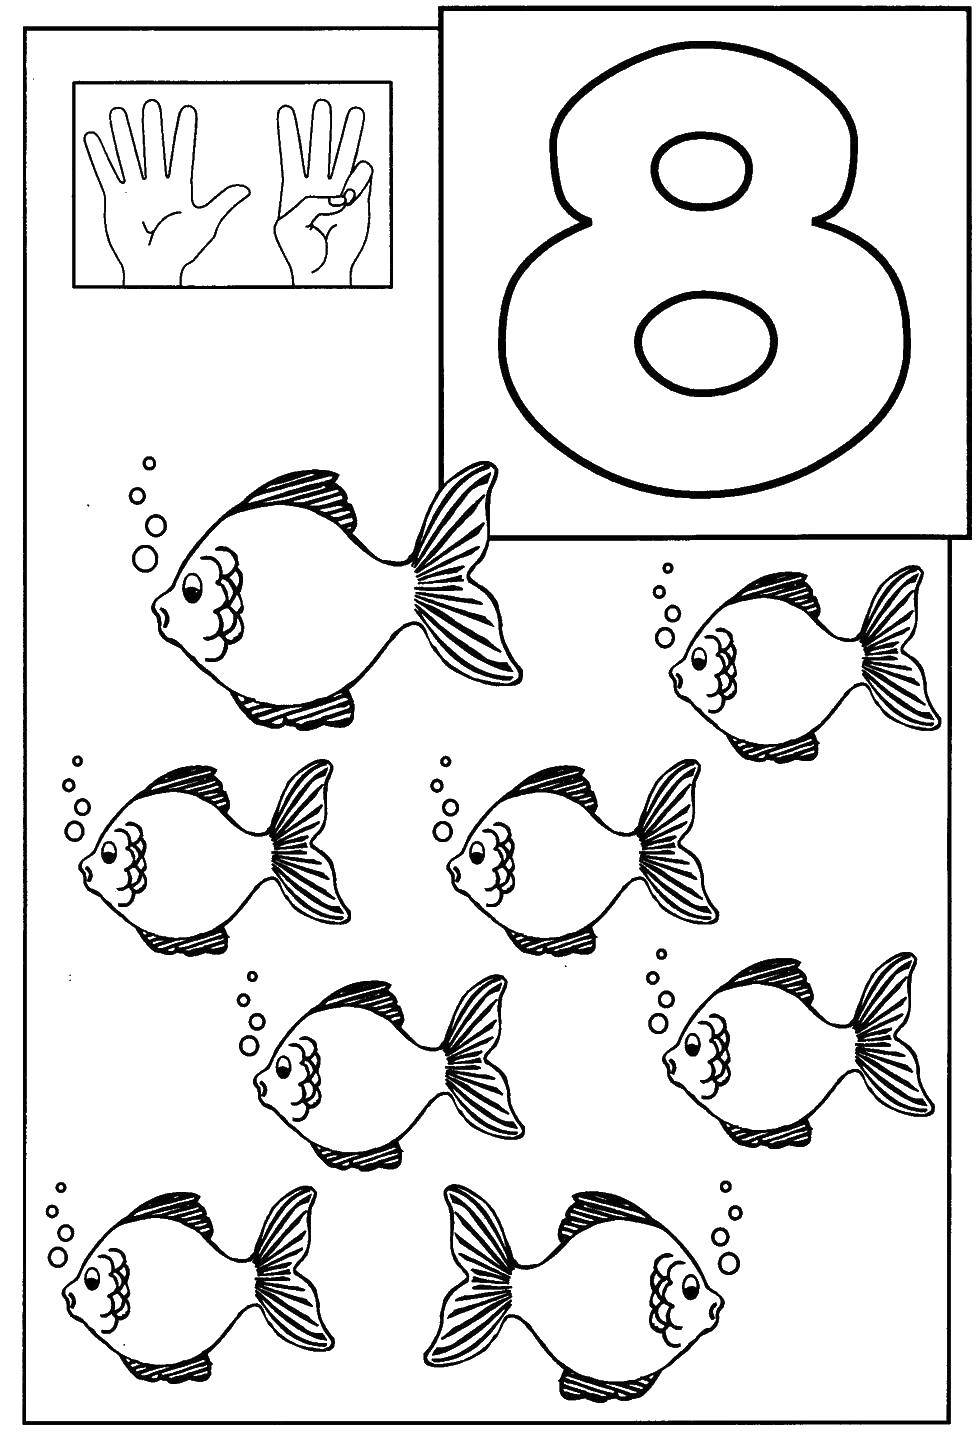 Опис: розмальовки  Рибок 8. Категорія: Цифри. Теги:  цифри, лічба, рибки, 8.